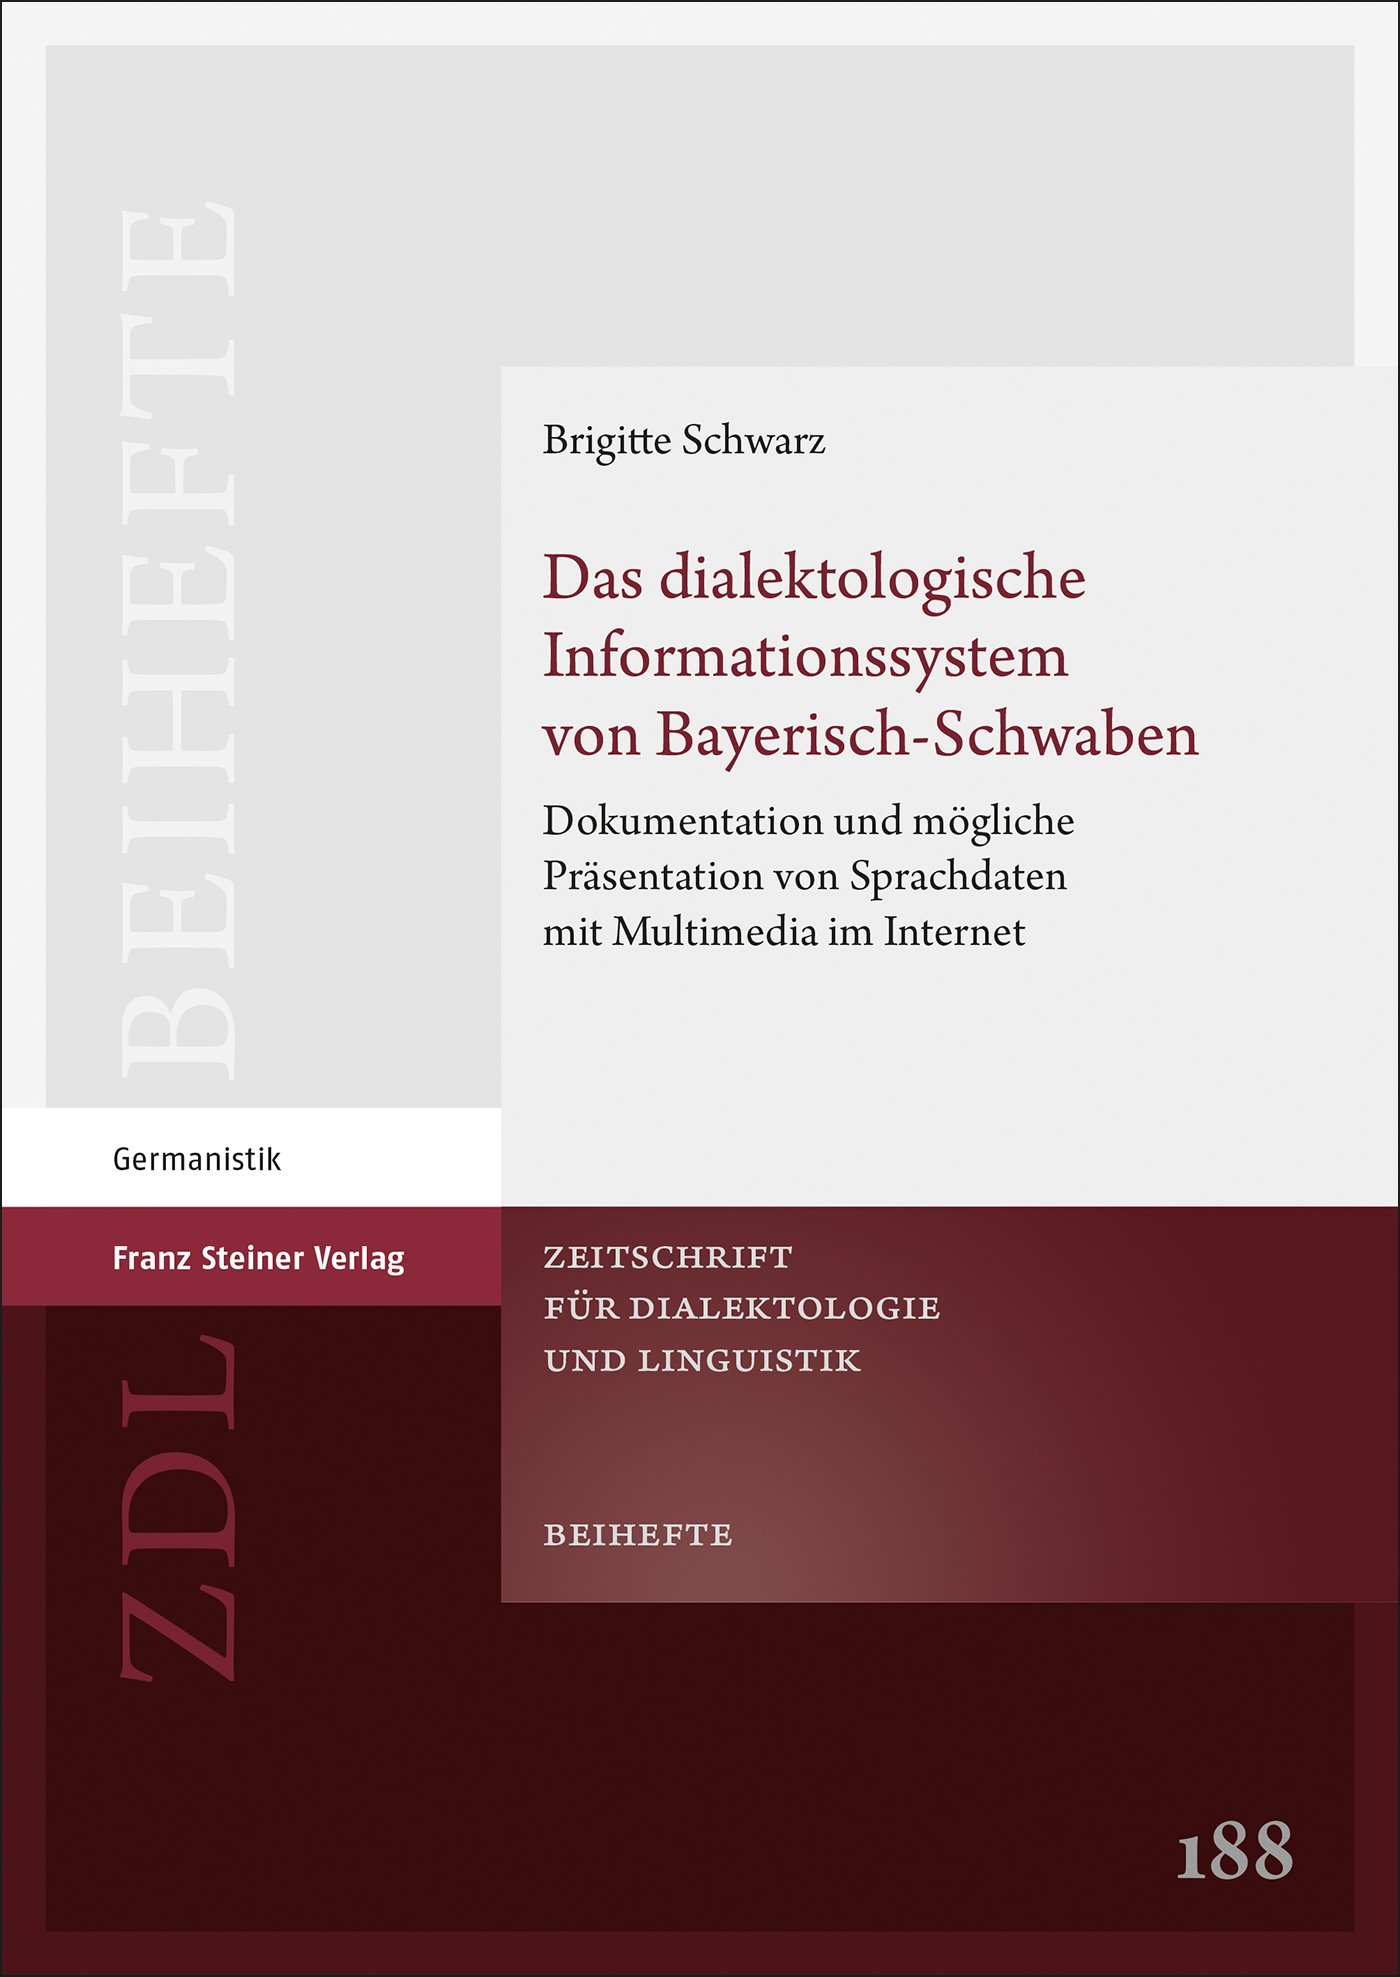 Das dialektologische Informationssystem von Bayerisch-Schwaben